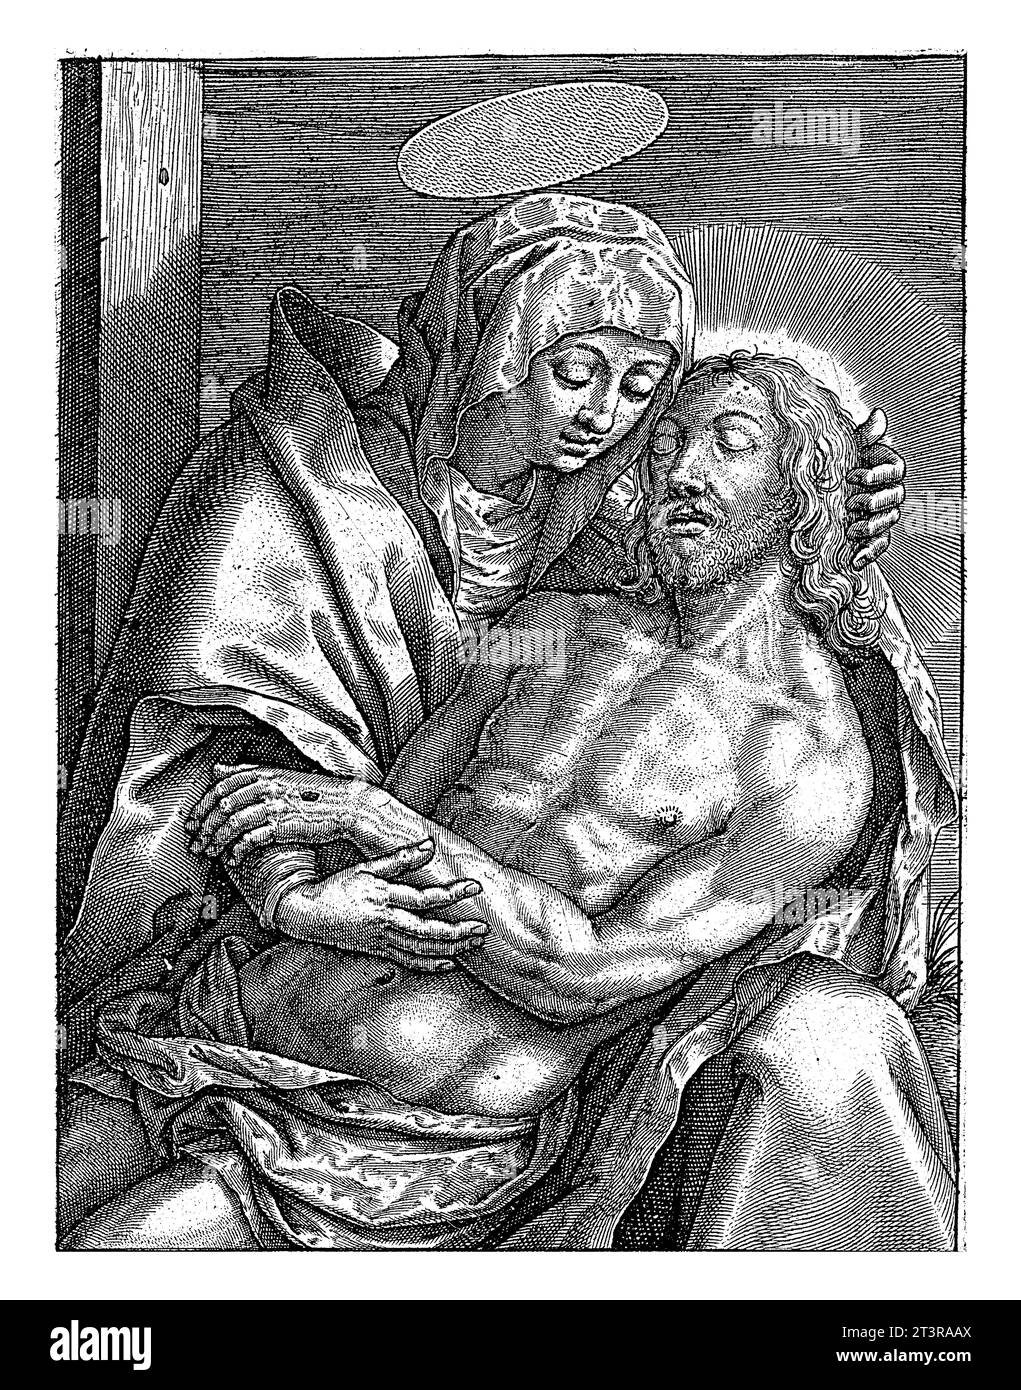 Pietà, Hieronymus Wierix, 1563 - prima del 1619 il corpo di Cristo giace sulle gremite di Maria, che piange suo figlio. A margine una citazione biblica di Hoogl. Foto Stock